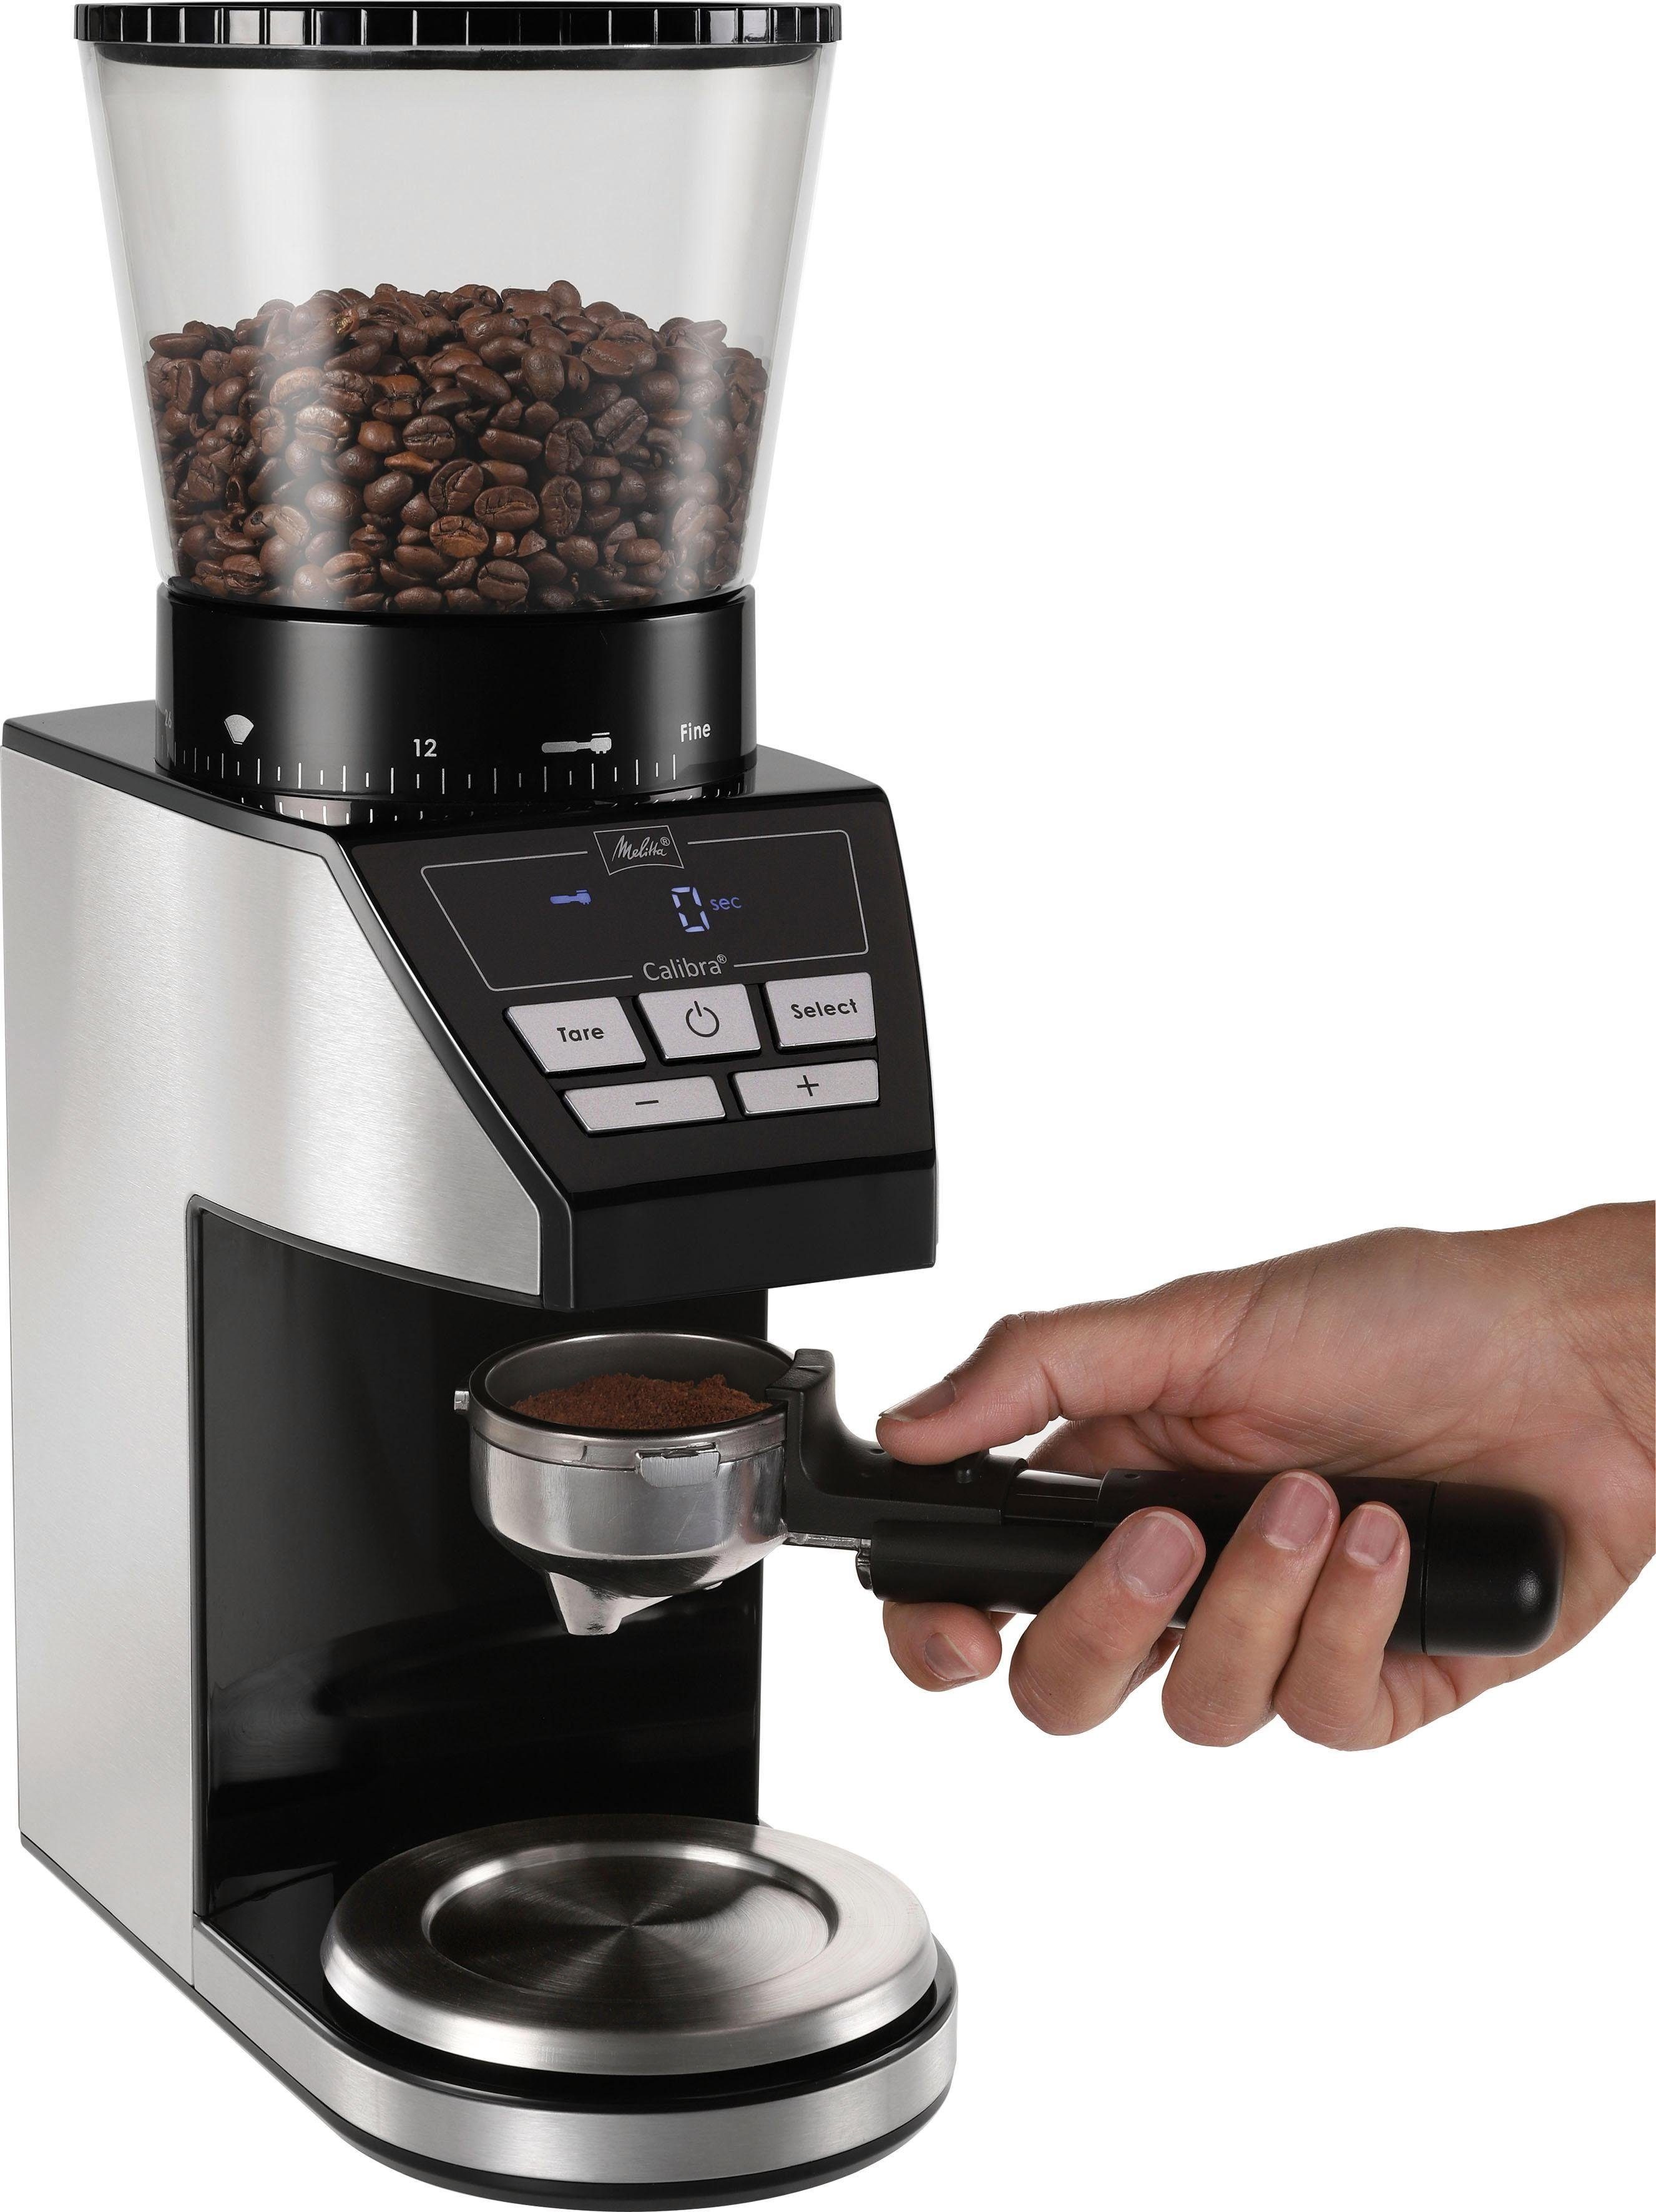 Bohnenbehälter 1027-01 160 Melitta schwarz-Edelstahl, Kaffeemühle Kegelmahlwerk, 375 W, Calibra g